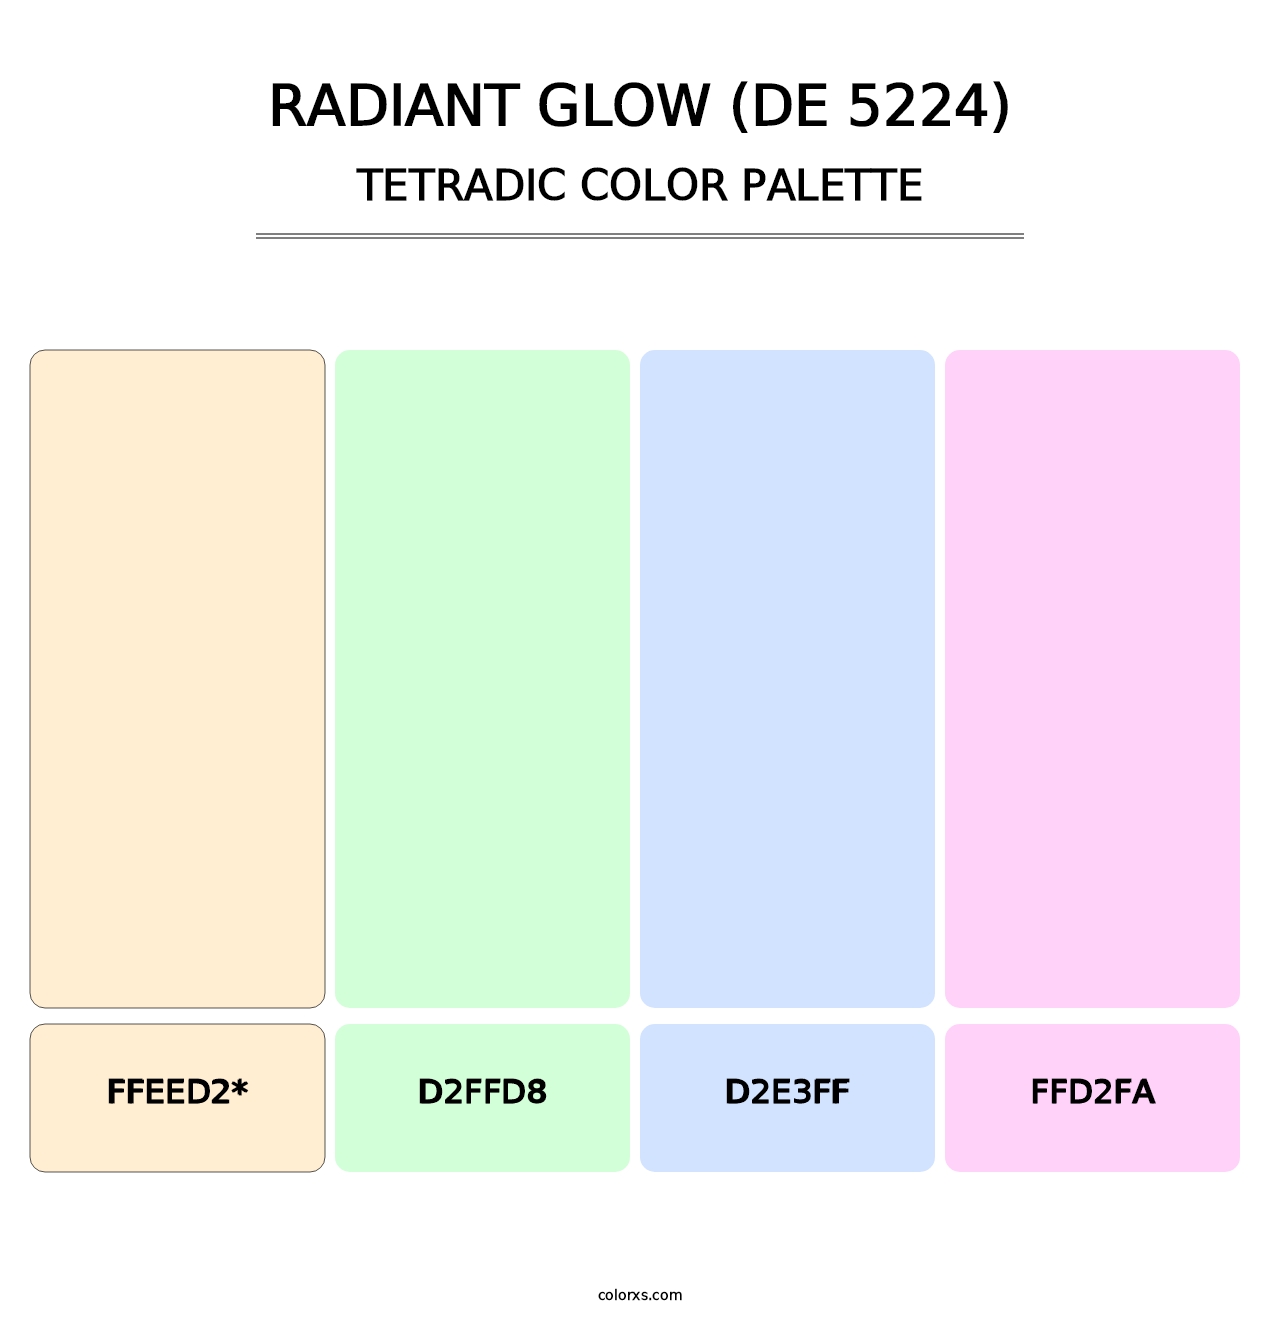 Radiant Glow (DE 5224) - Tetradic Color Palette